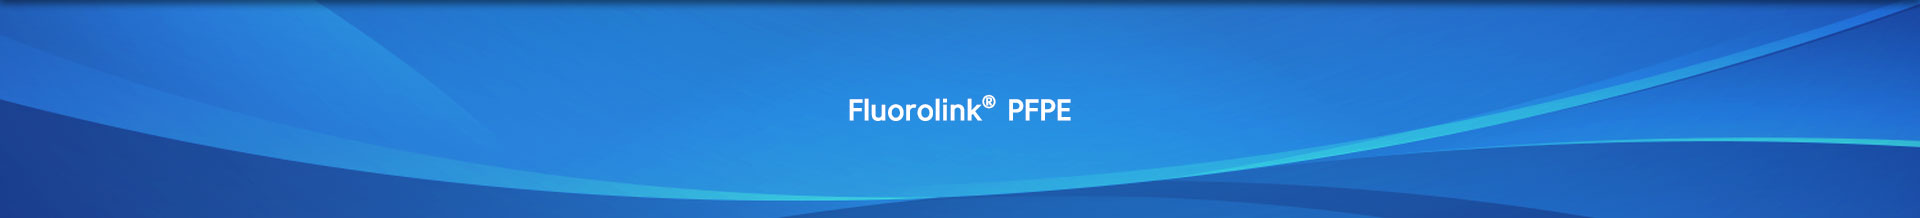 Fluorolink PFPE